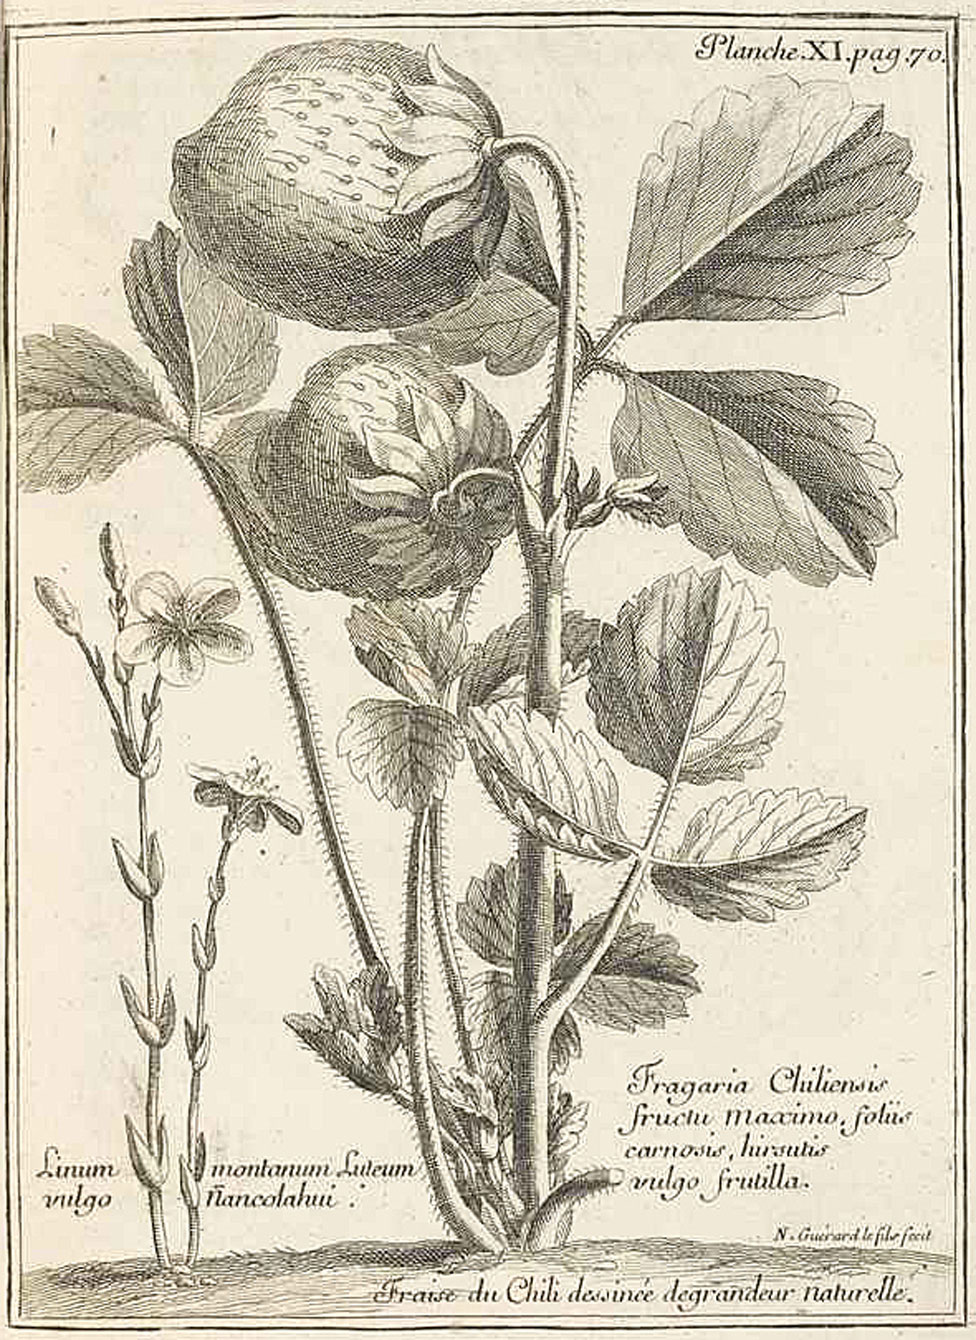 La ilustración que aparece en el libro de Frézier des las fresas de Chile del tamaño de nueces o hasta huevos.